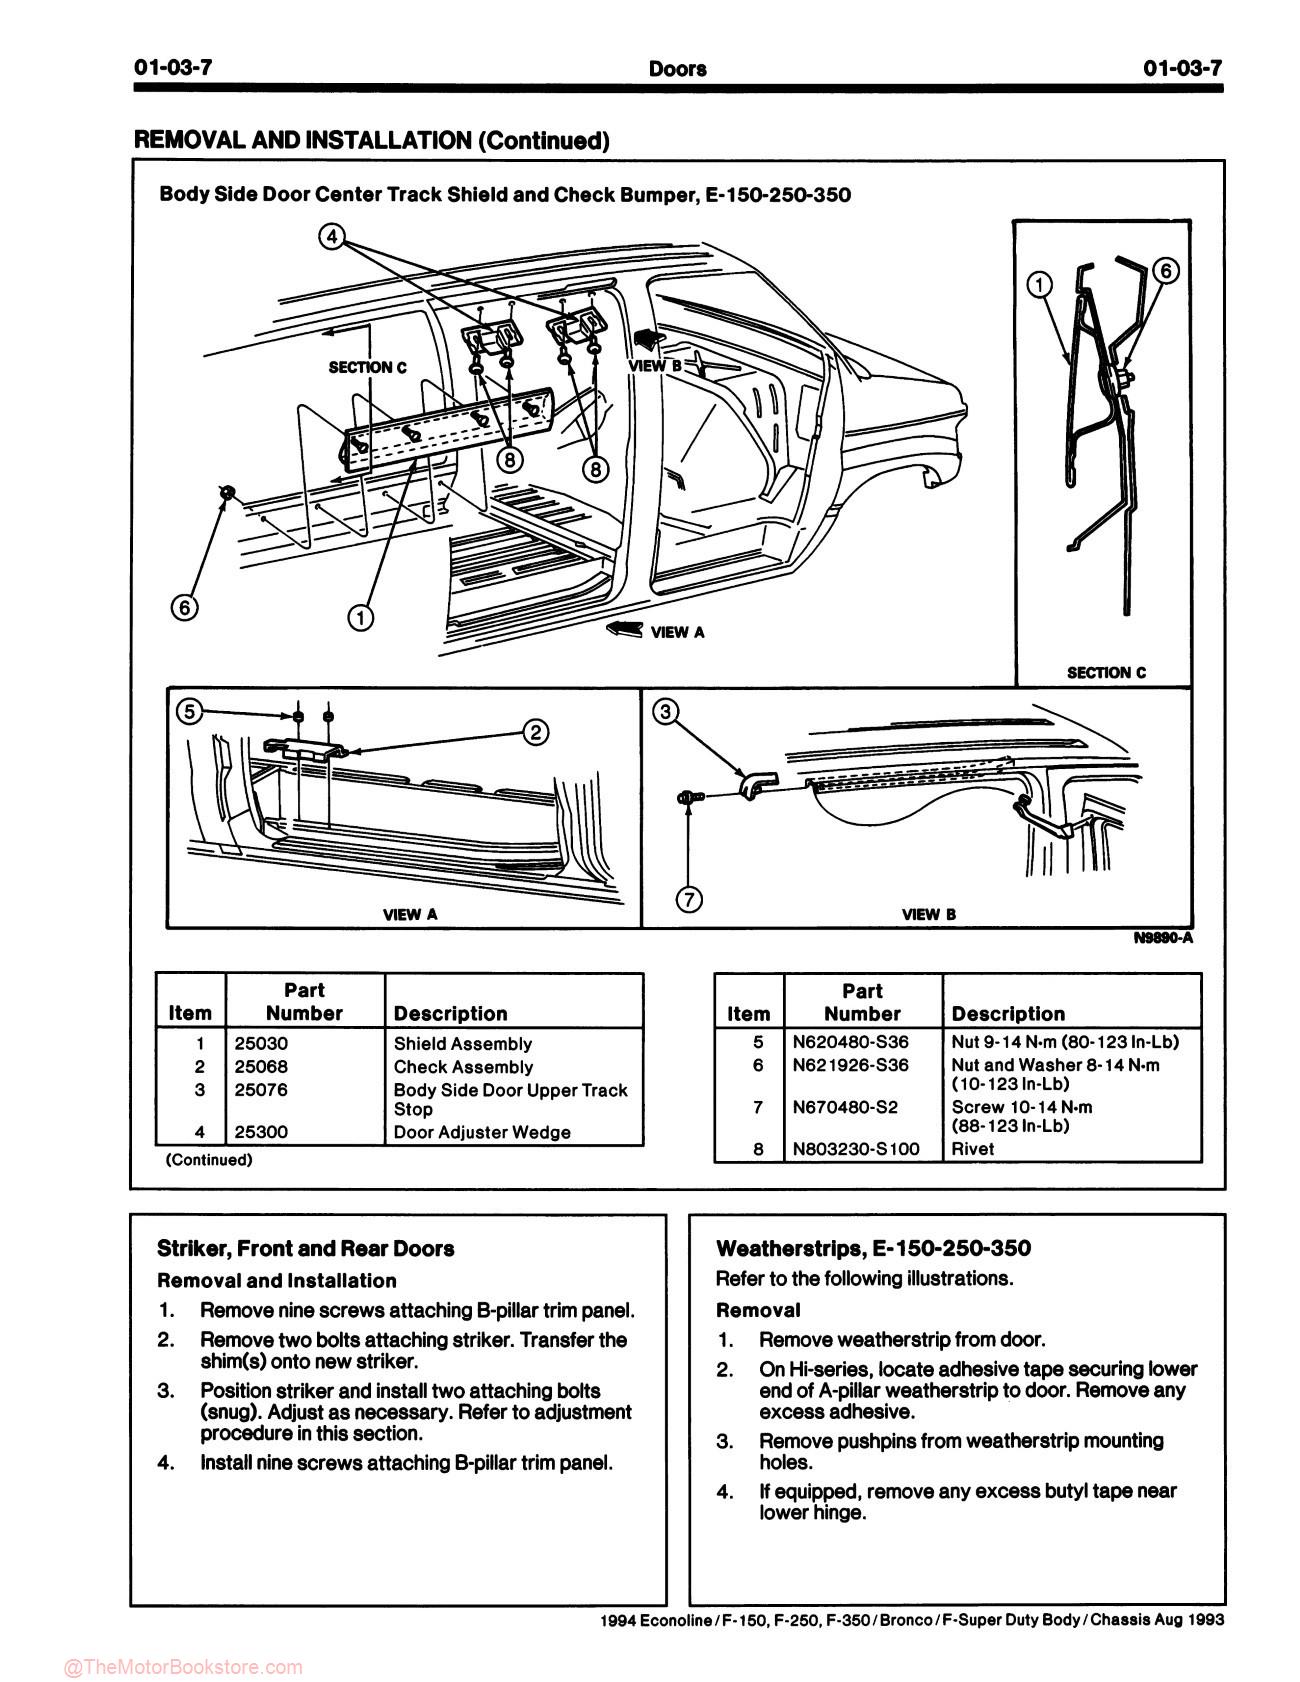 1994 Ford Truck Service Manual - F-150-350, F-Super Duty, Bronco, & Econoline - Sample Page 1